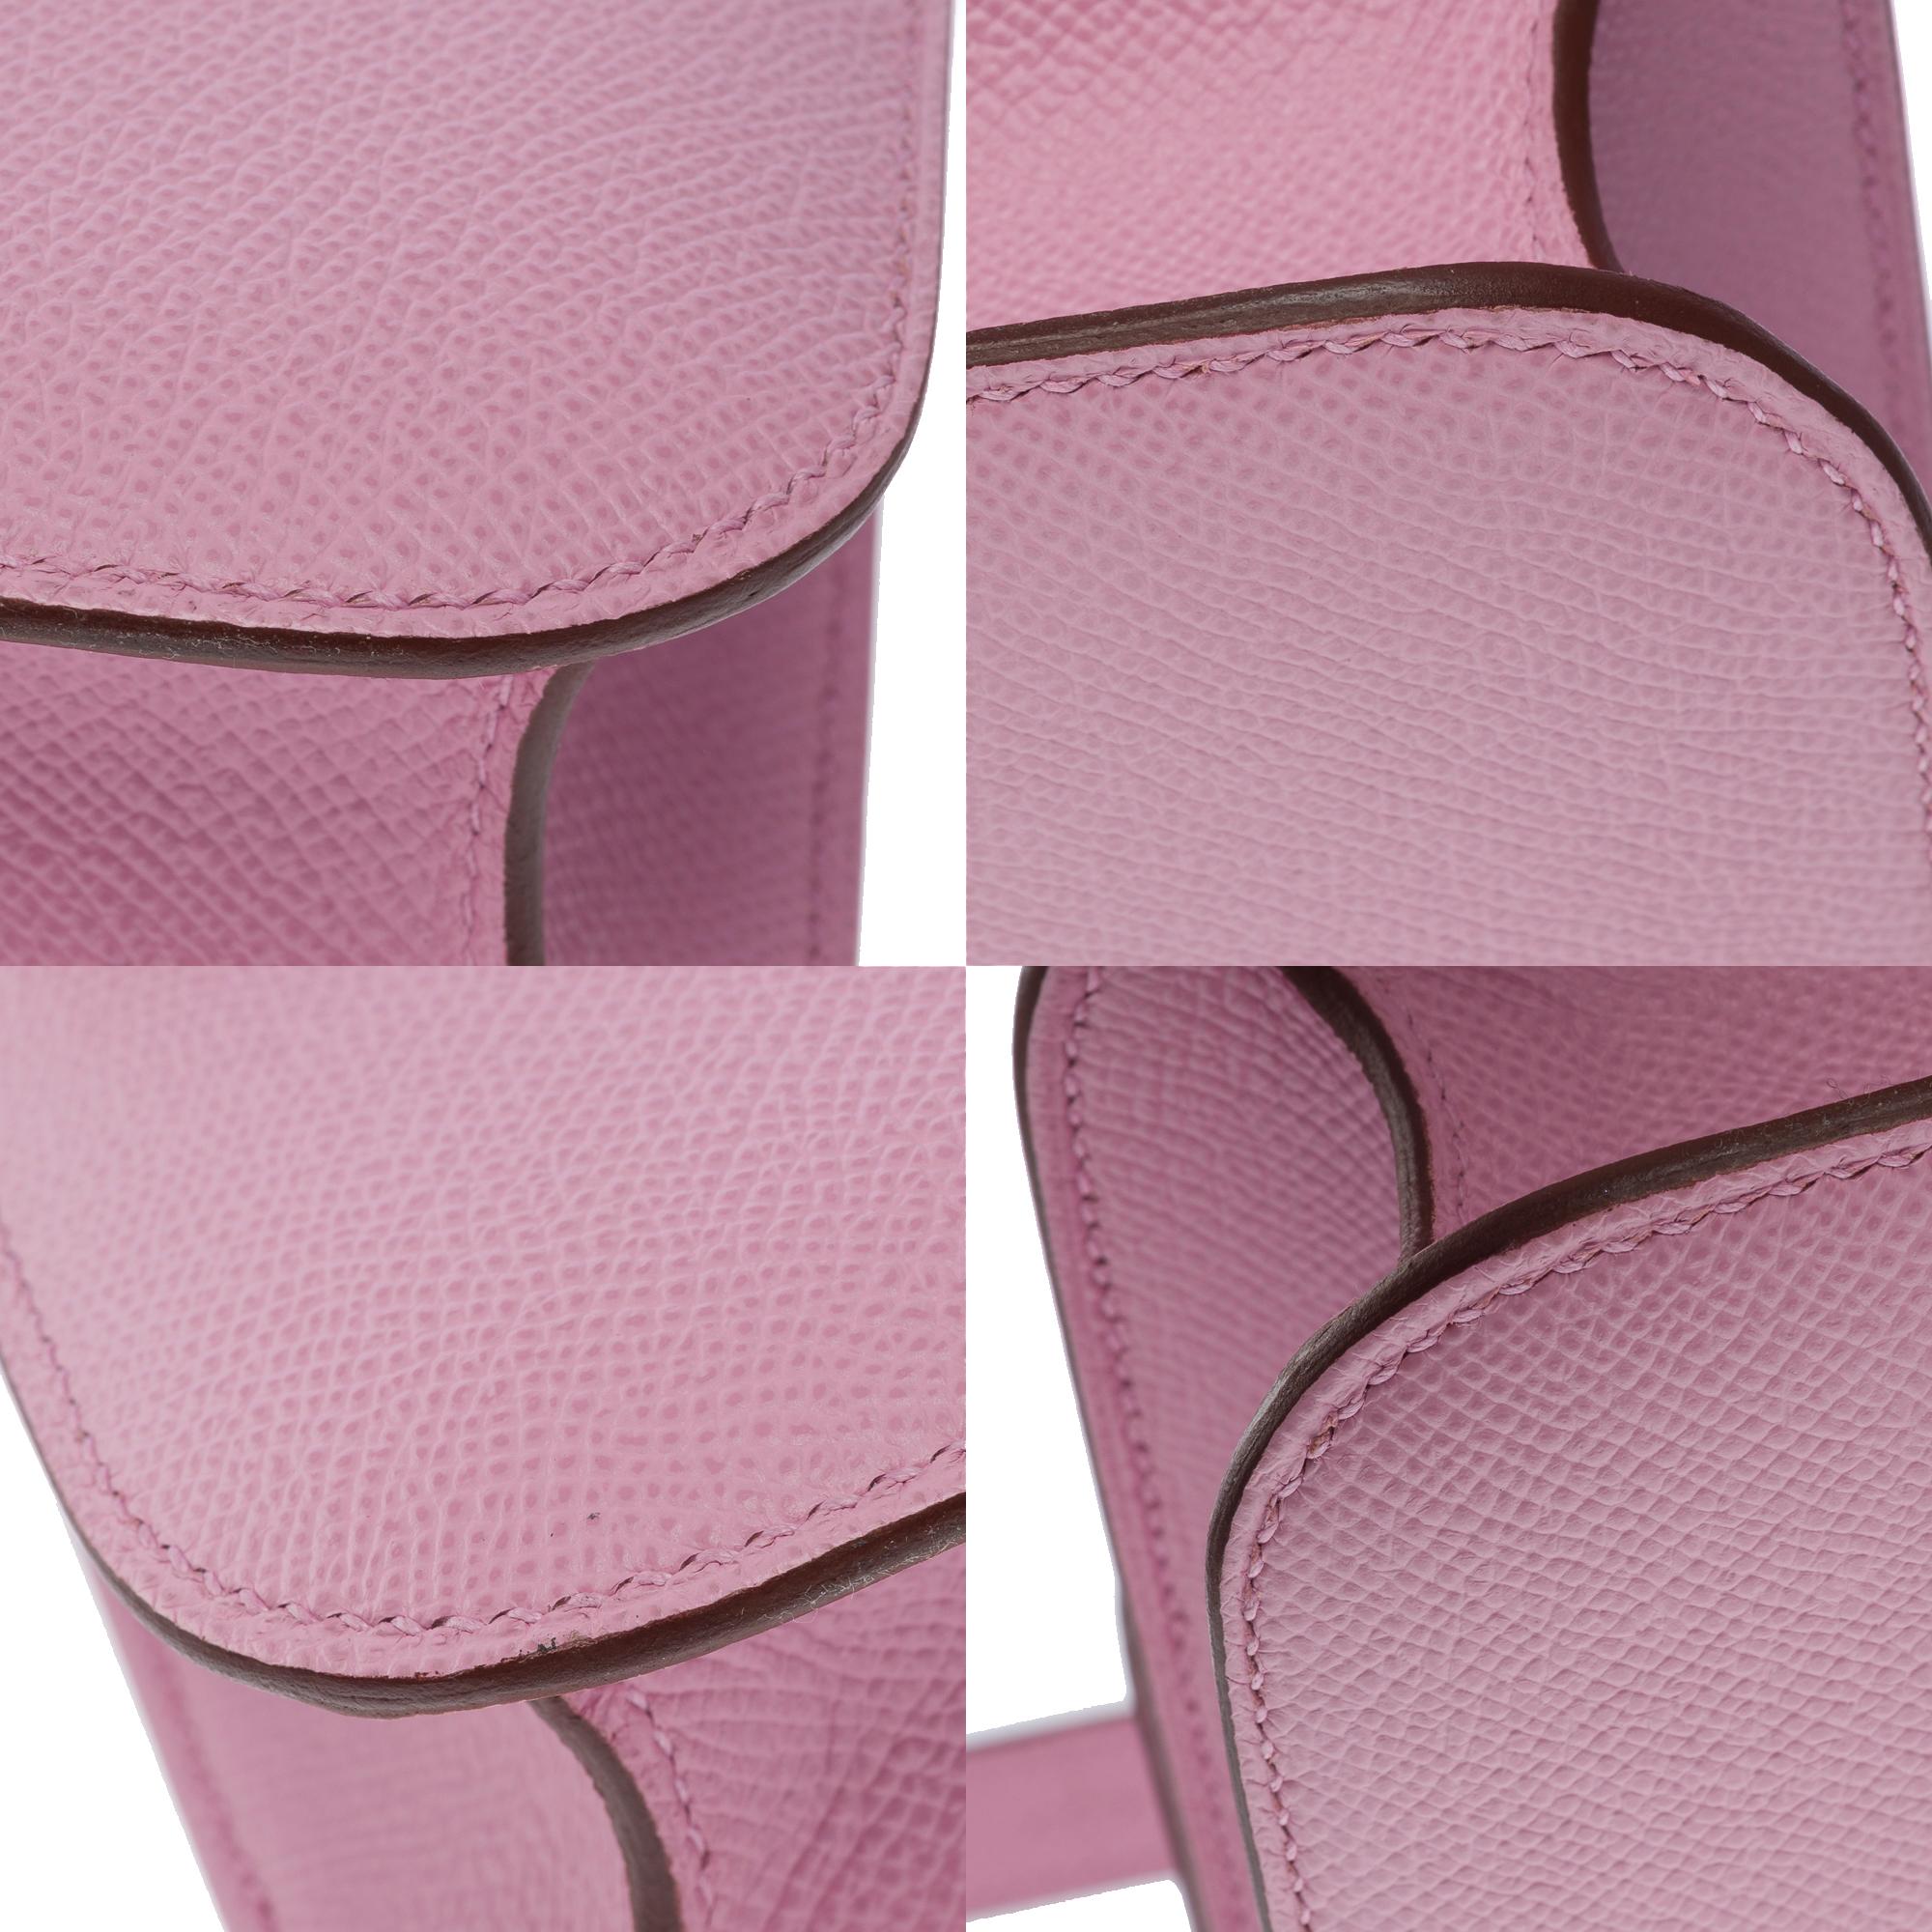 Hermès Constance 23 Mirror shoulder bag in Mauve Sylvestre Epsom leather , SHW 6